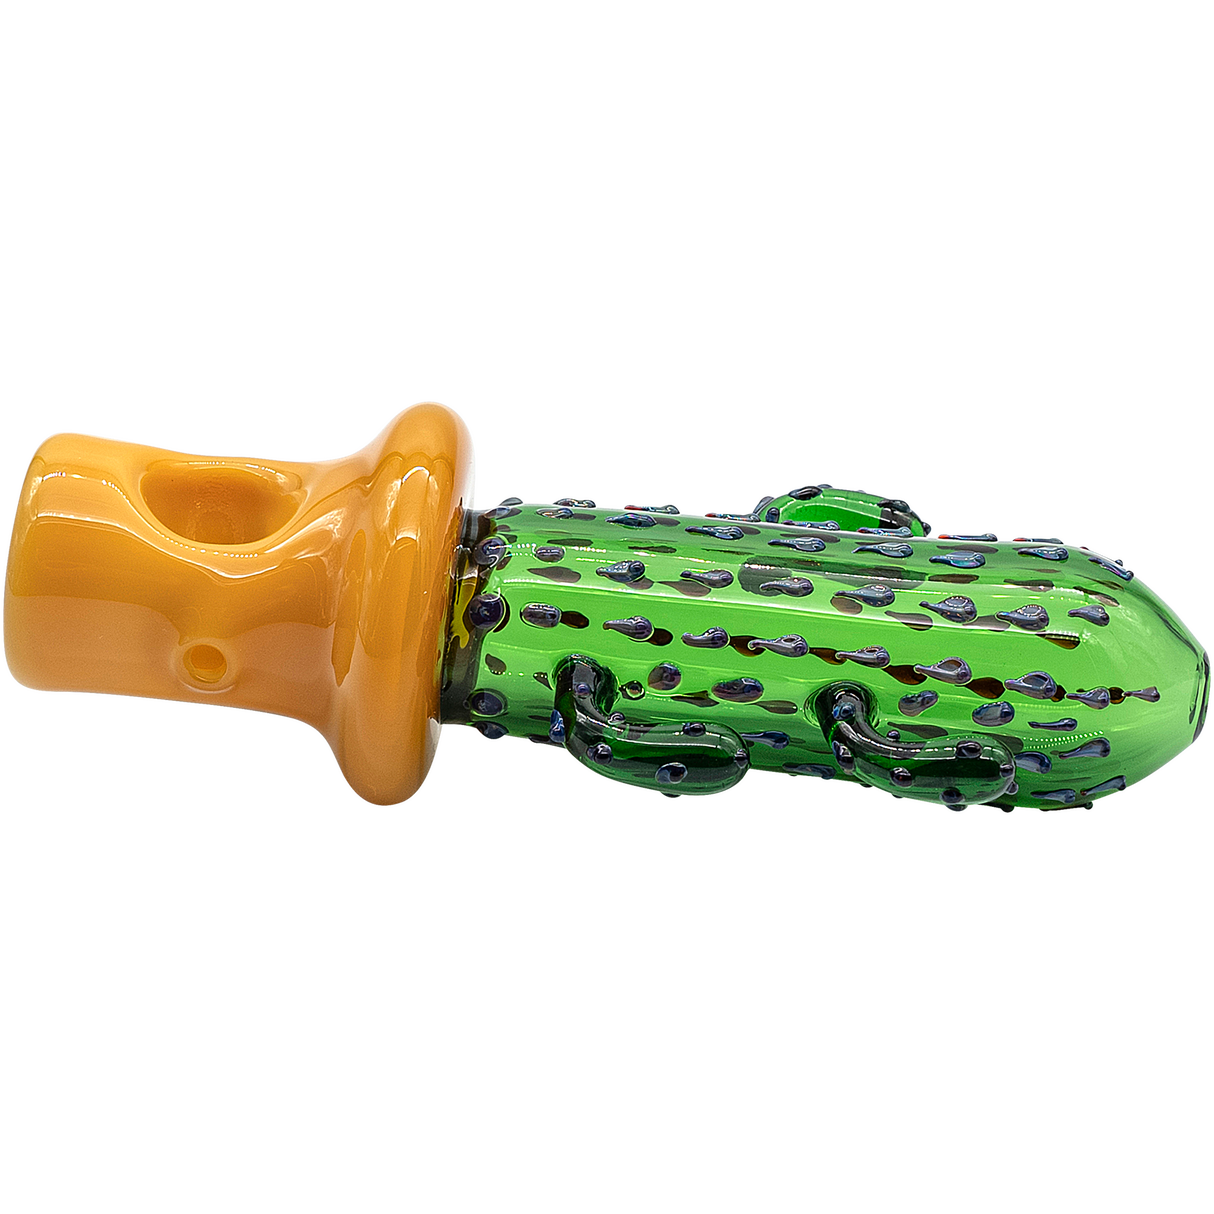 LA Pipes Glass Saguaro Cactus Pipe - 5" Spoon Design in Green Borosilicate Glass